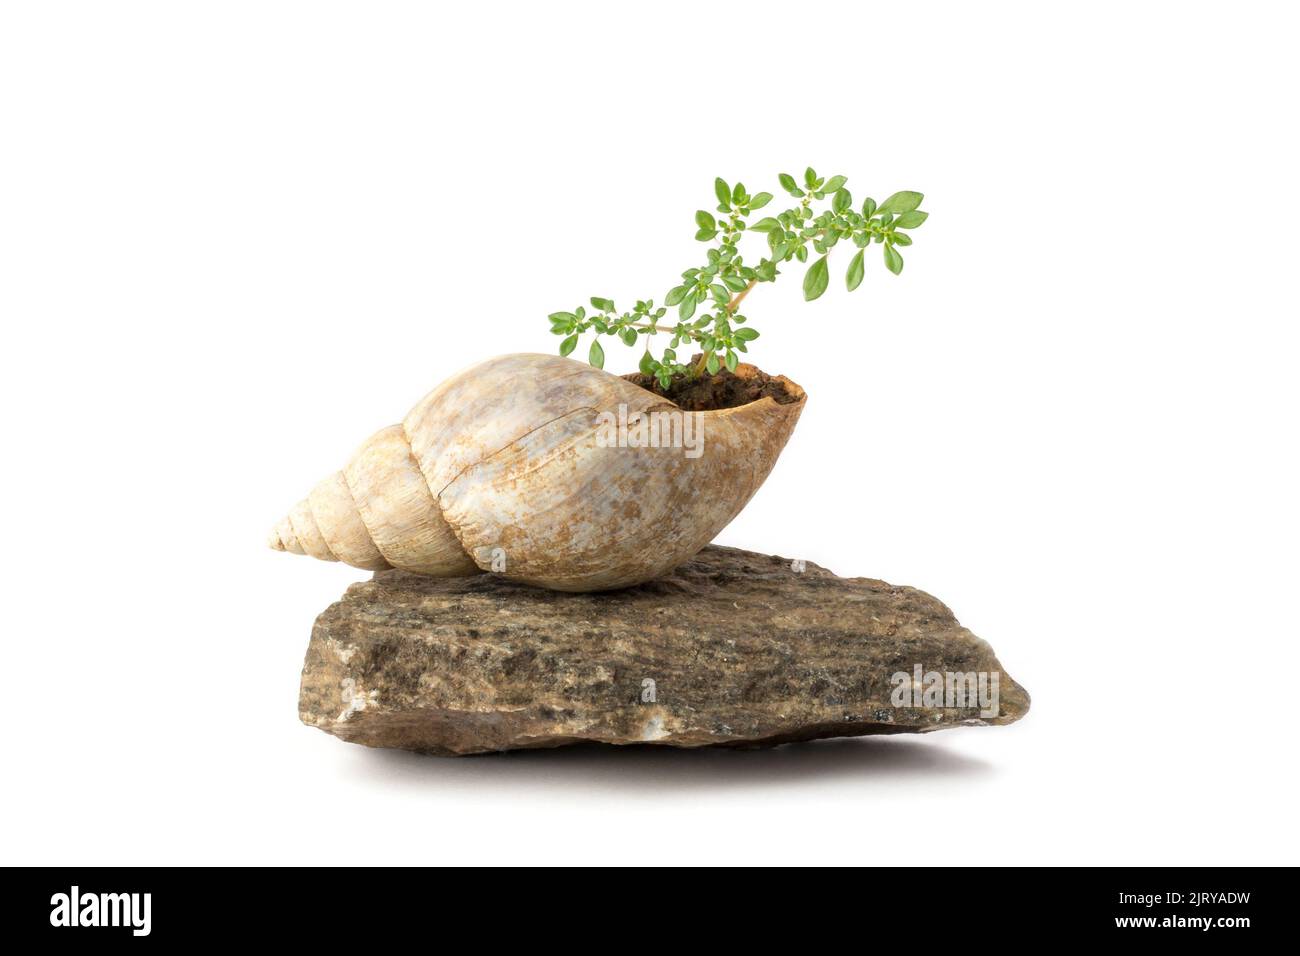 pianta che cresce in guscio di lumaca sulla cima di una roccia, isolato su sfondo bianco, concetto di giardinaggio in miniatura Foto Stock